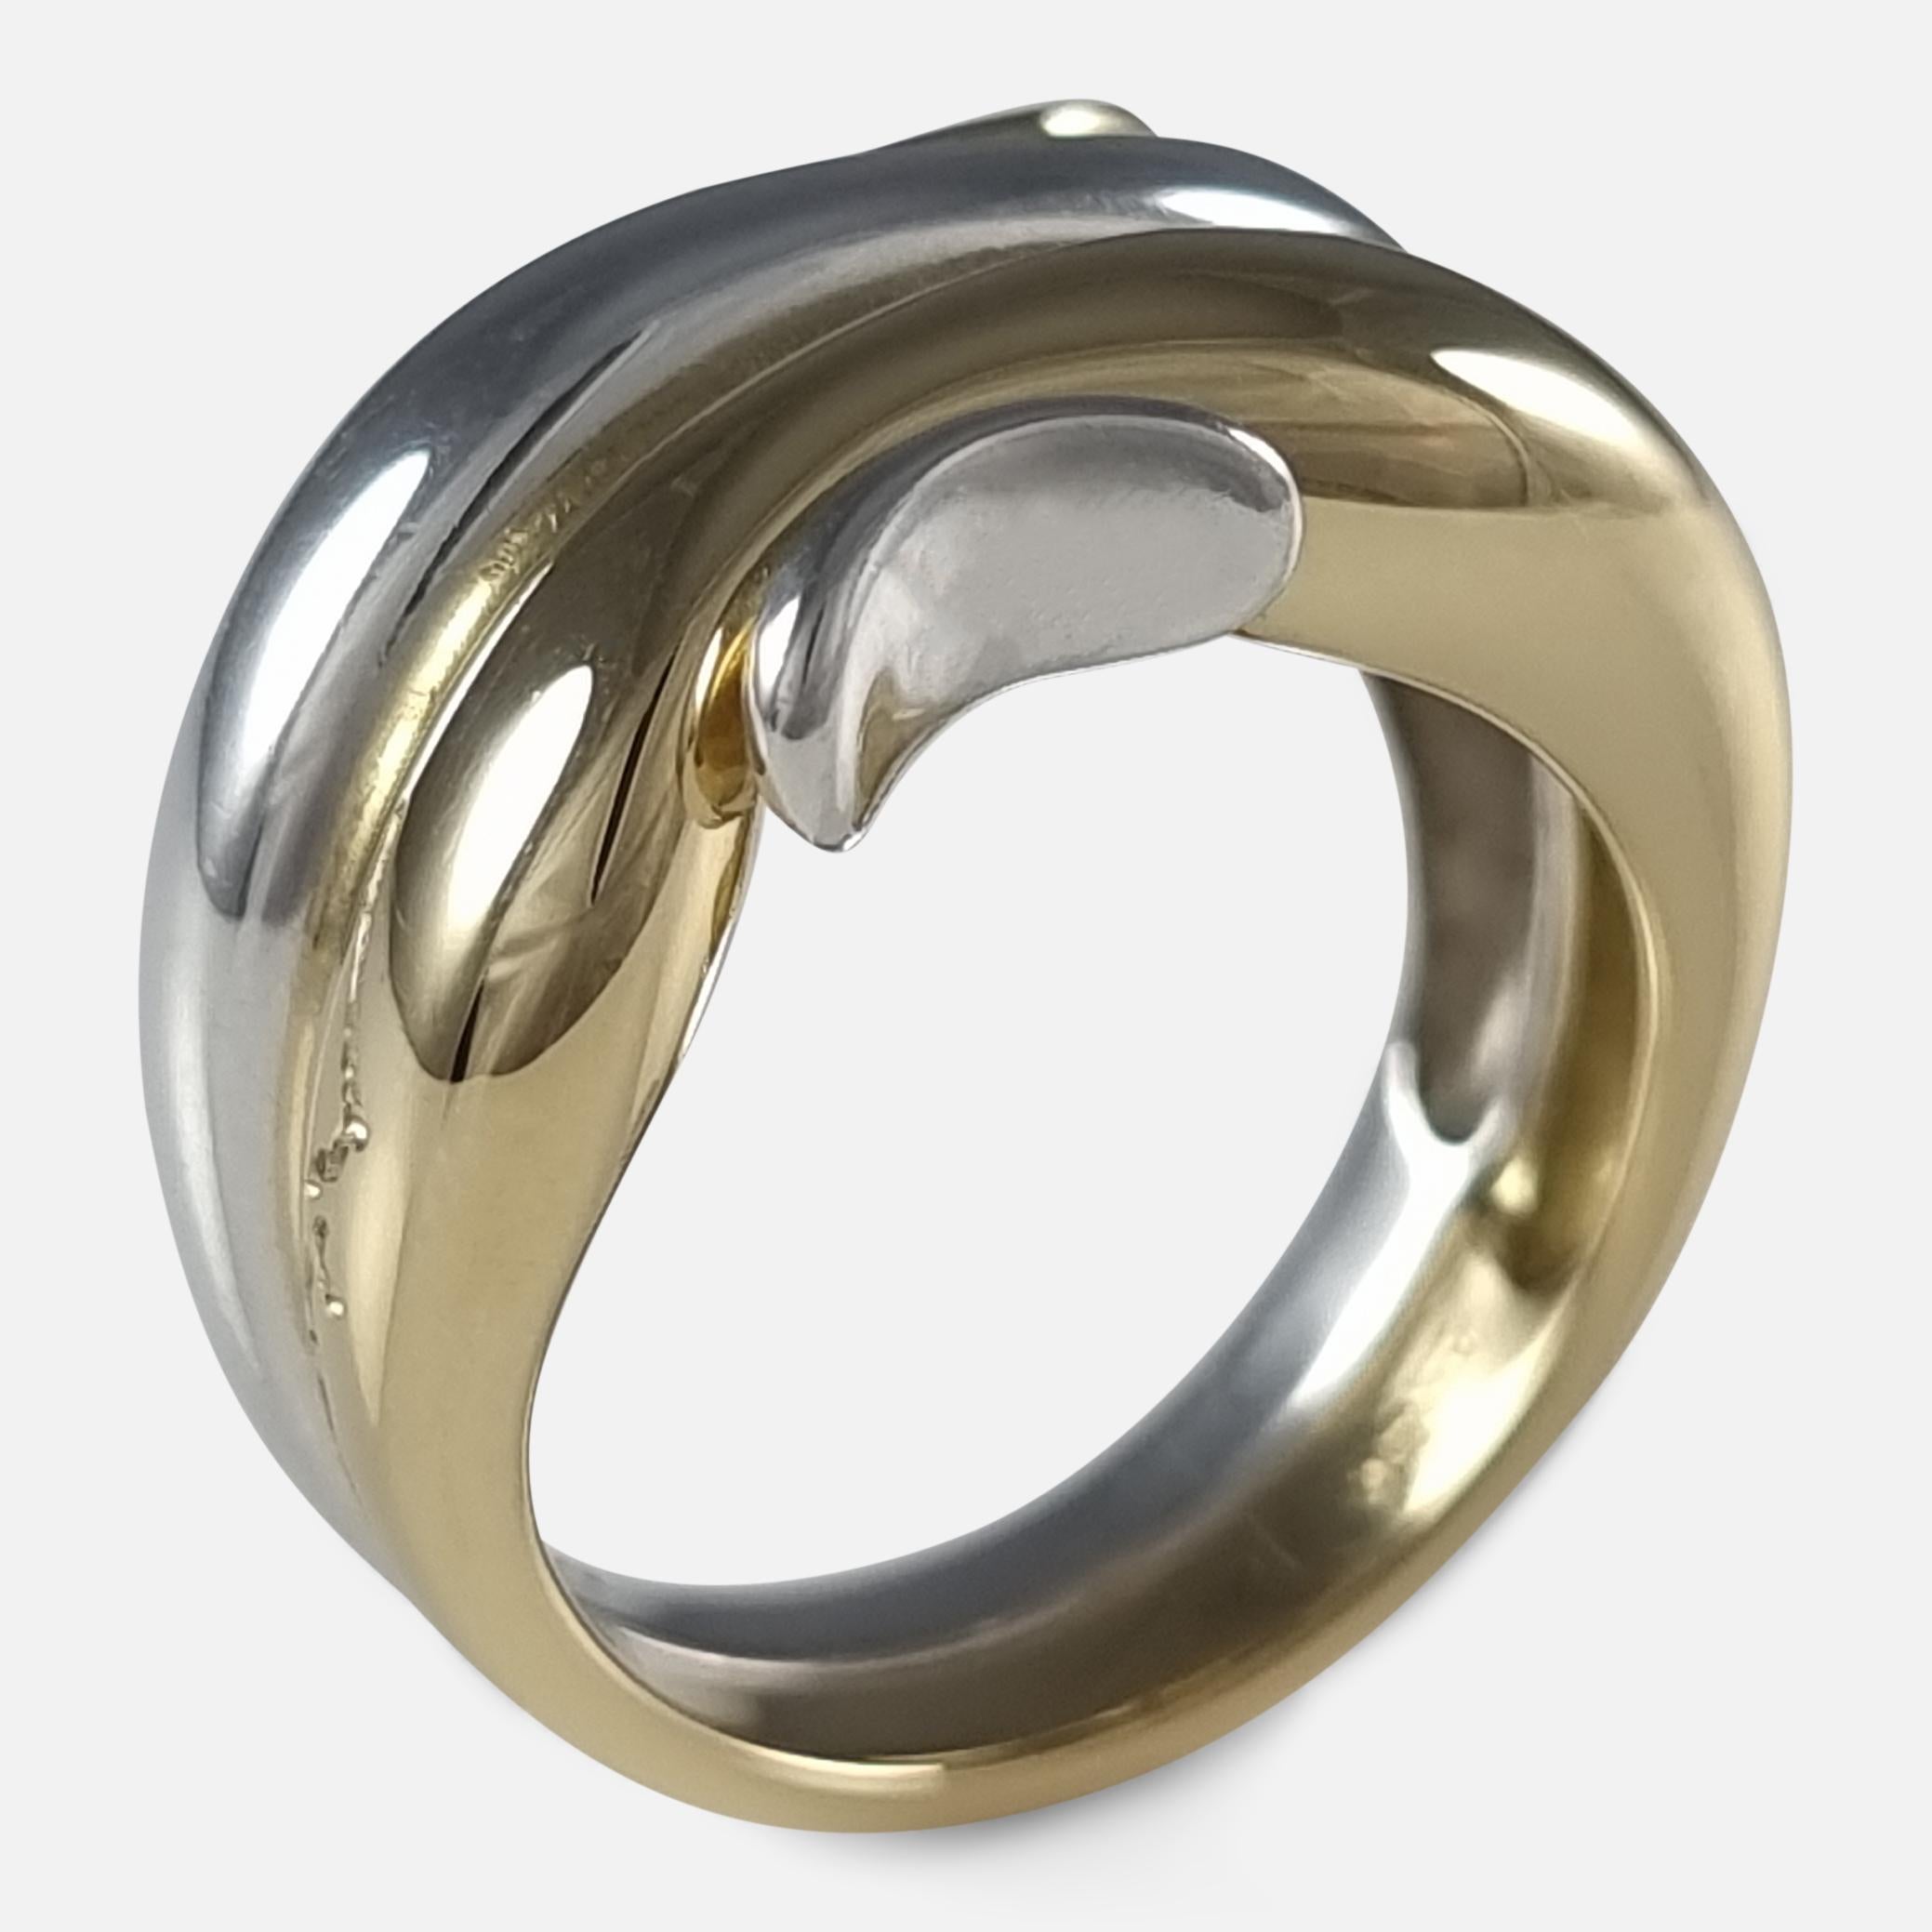 George Jensen 18ct Gold & Silver Ring, Minas Spiridis 9